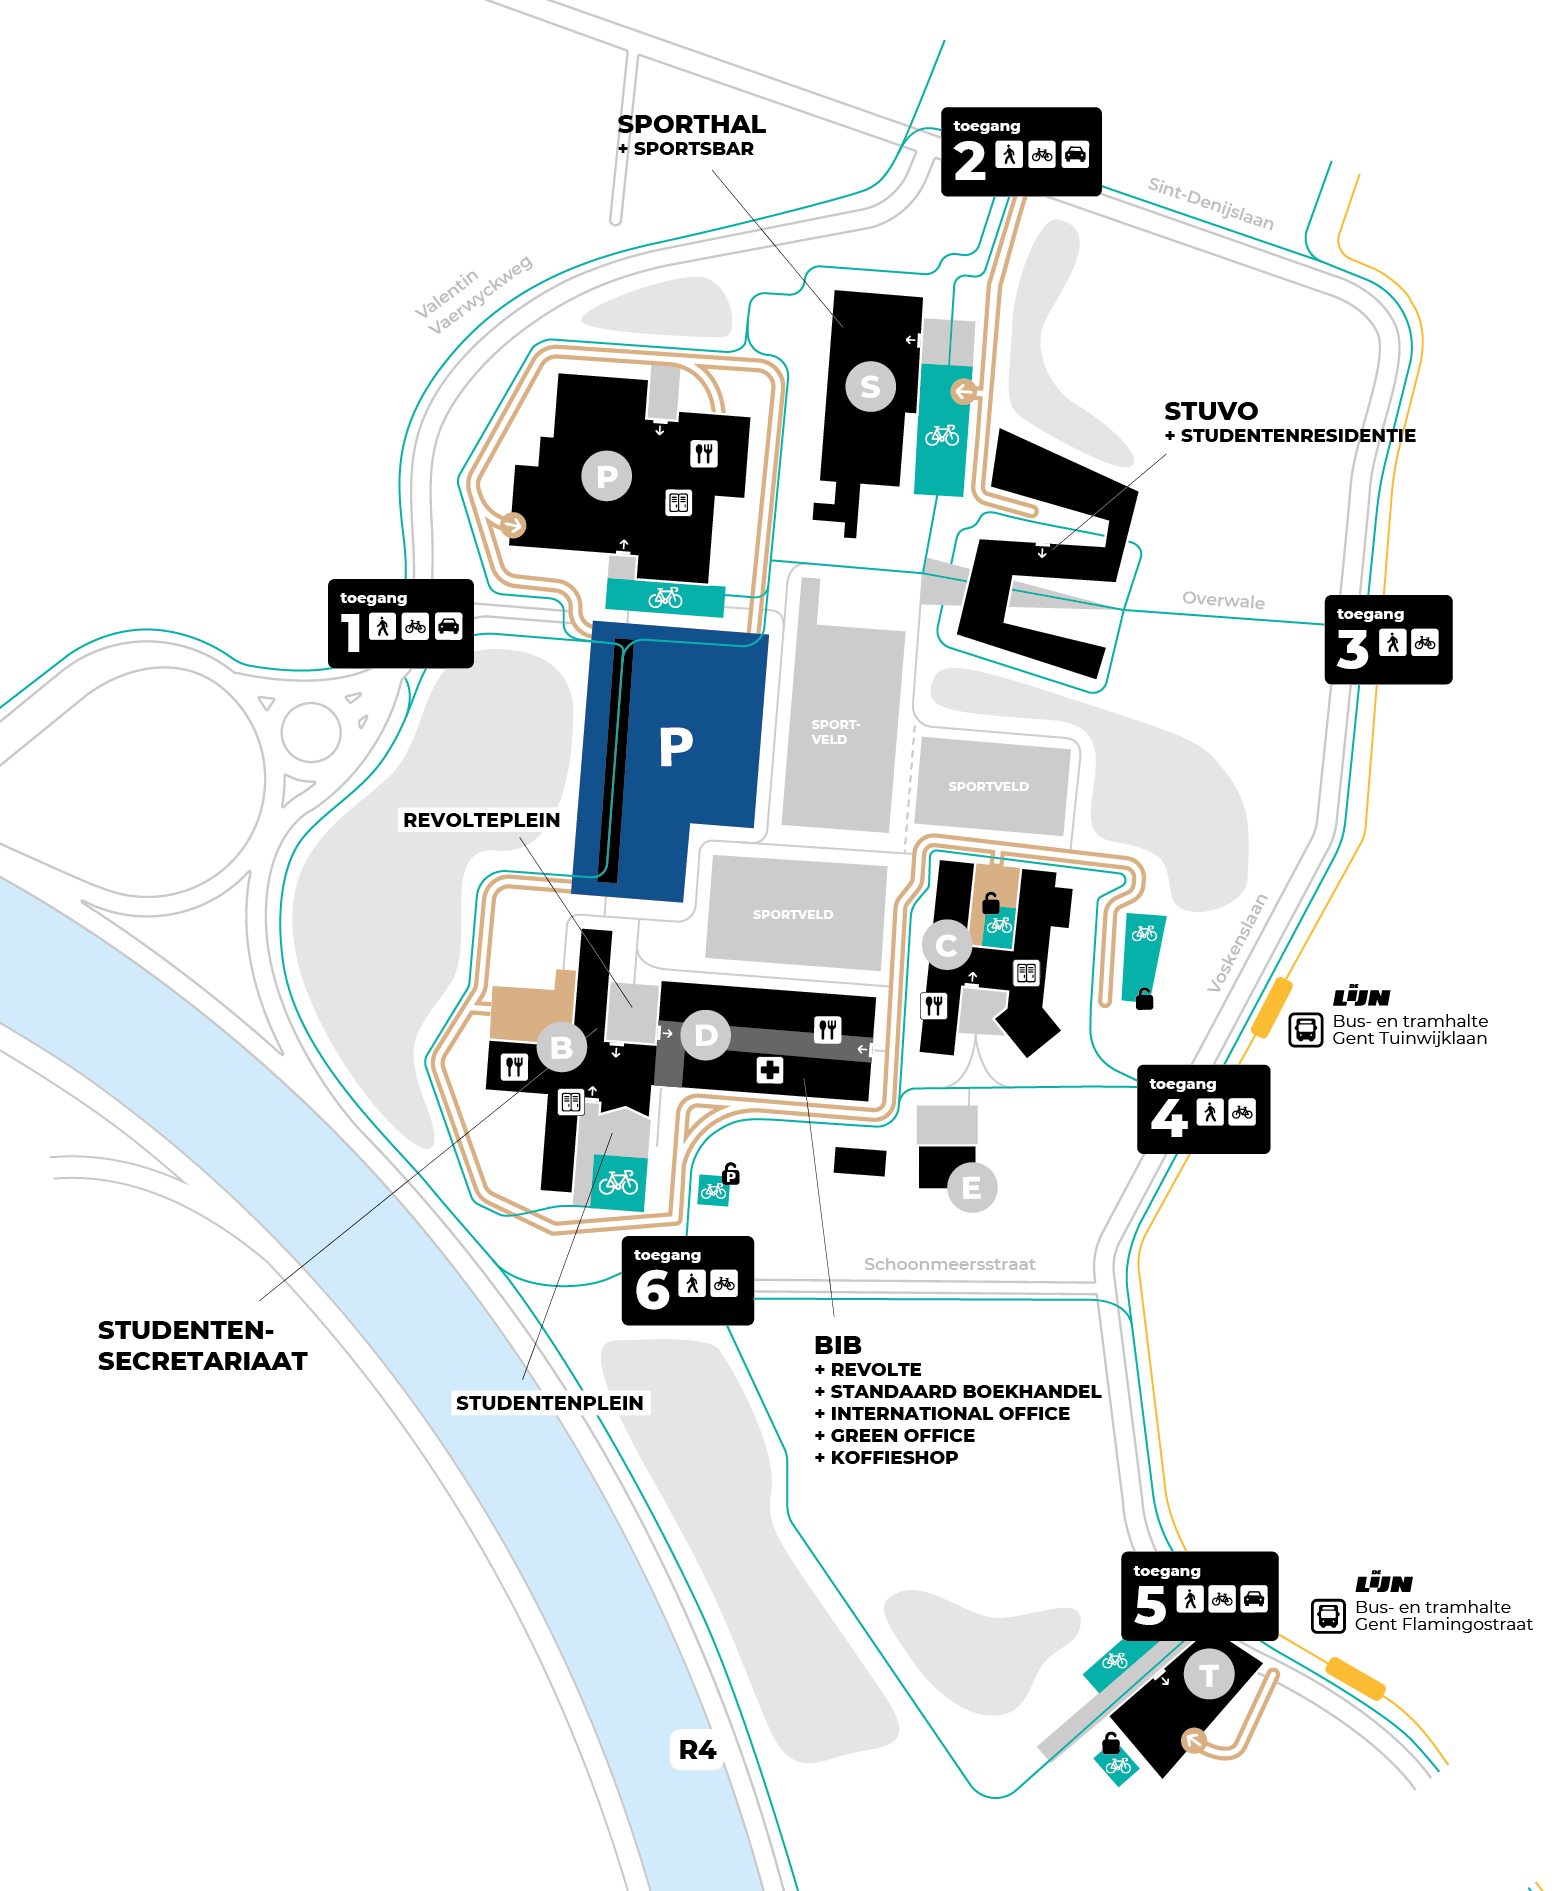 Plan of map plattegrond campus Schoonmeersen